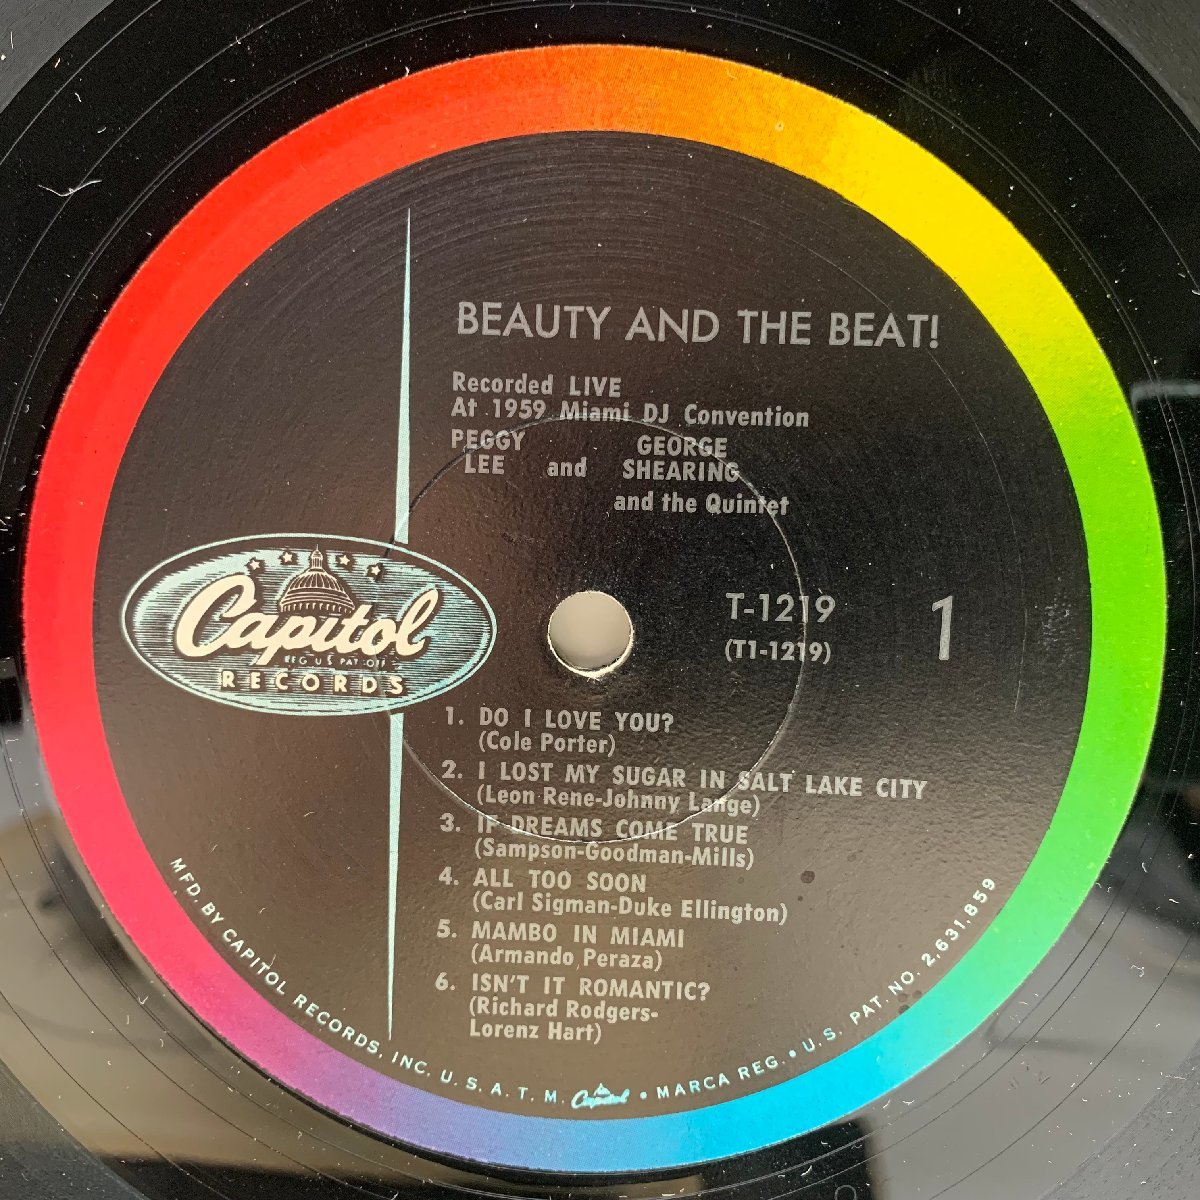 良好盤!! MONO 米オリジナル 初版 左Logo 虹ツヤ PEGGY LEE / GEORGE SHEARING QUINTET Beauty And The Beat ('59 Capitol) 絶頂期Live_画像3